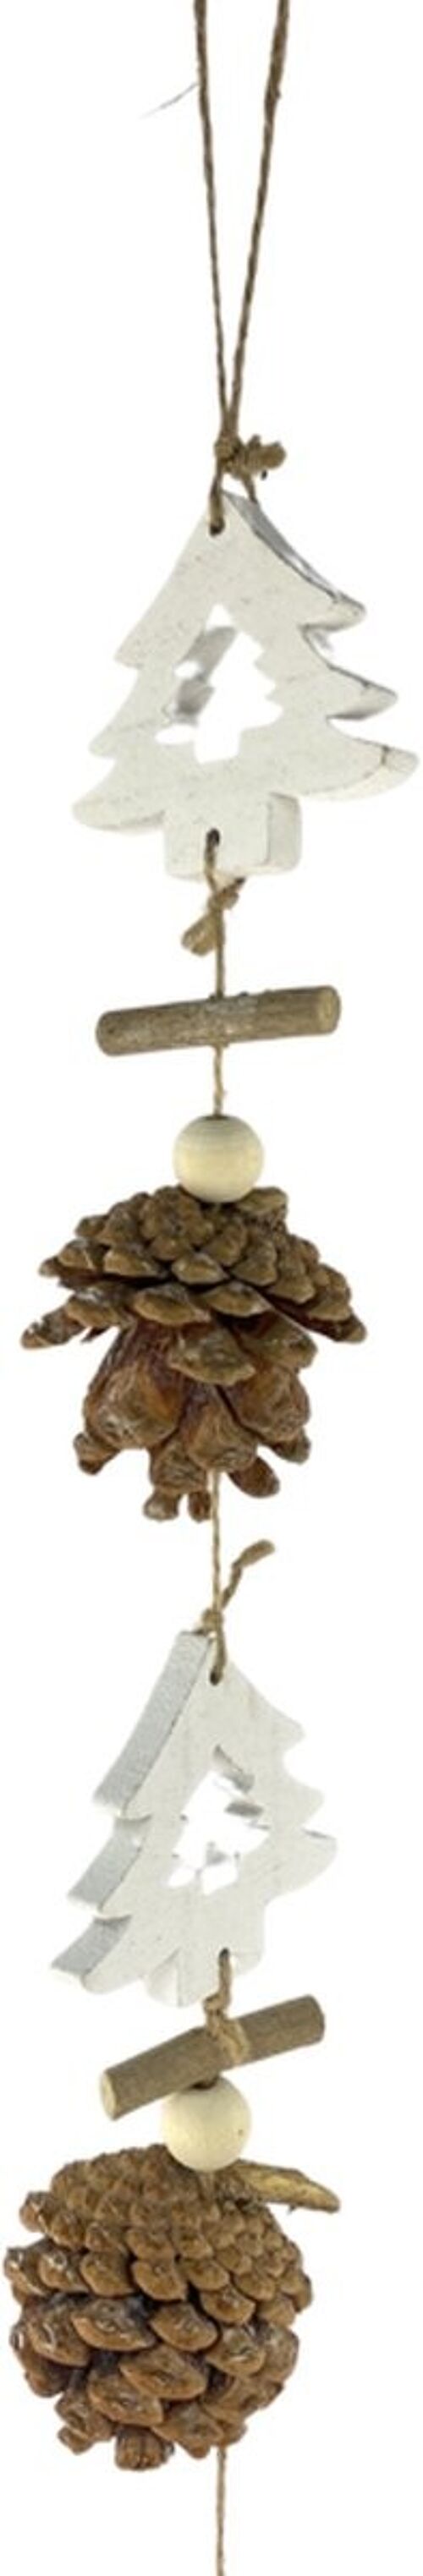 Kerst decoratie slinger - Garland Christmas Tree | 85 cm | Extra lange kerst slinger van natuurlijke materialen | Bruin